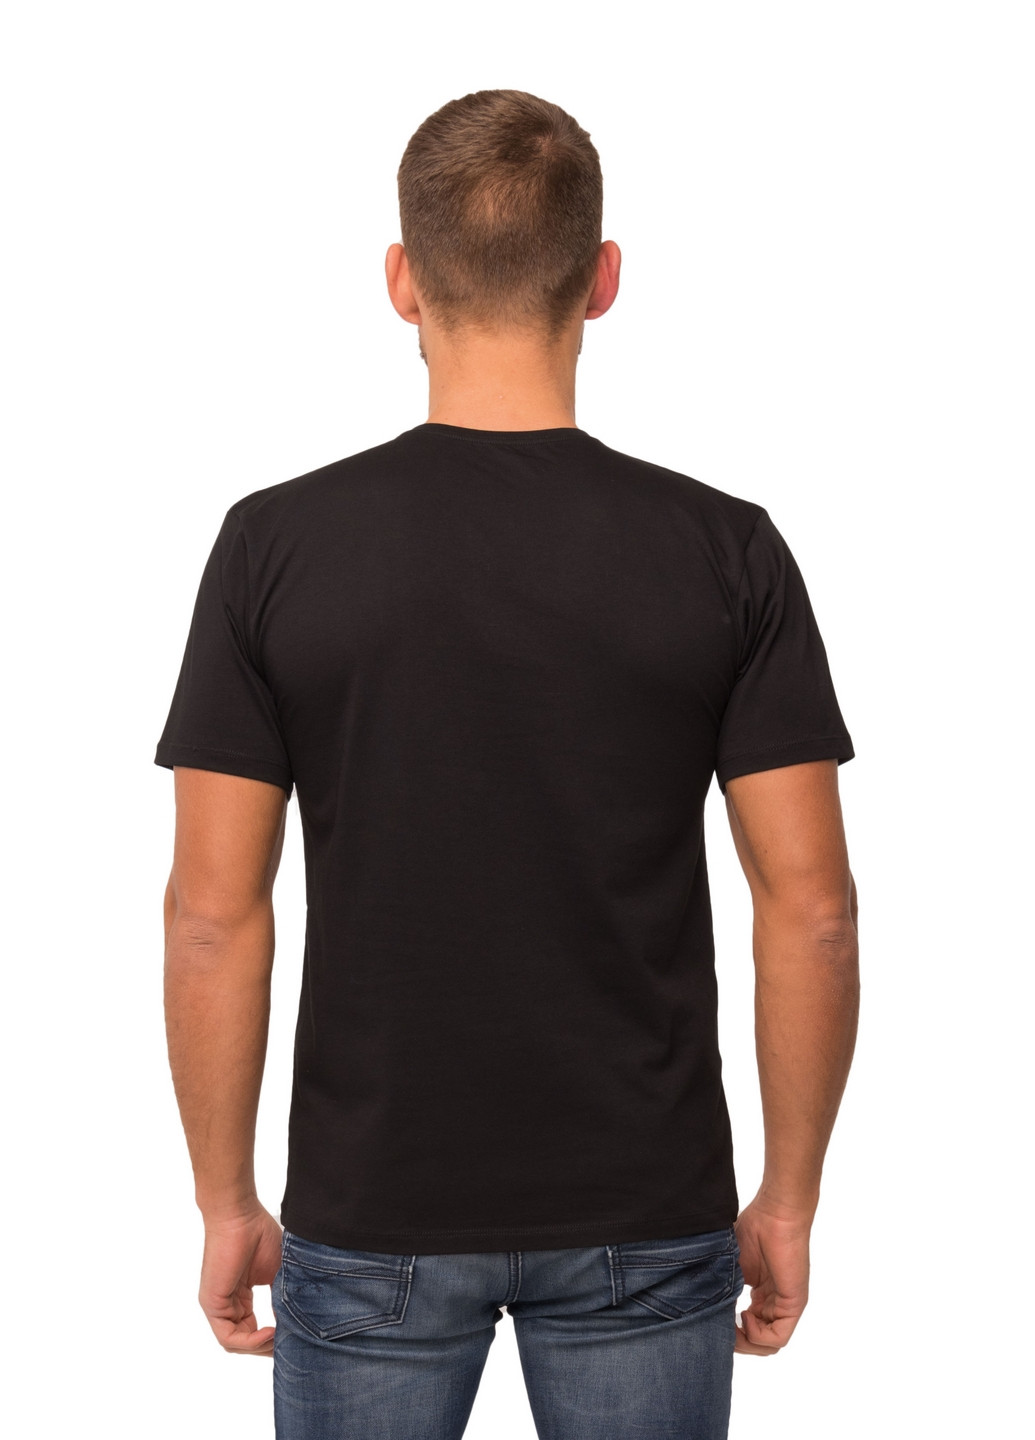 Черная футболка мужская Наталюкс 12-1343